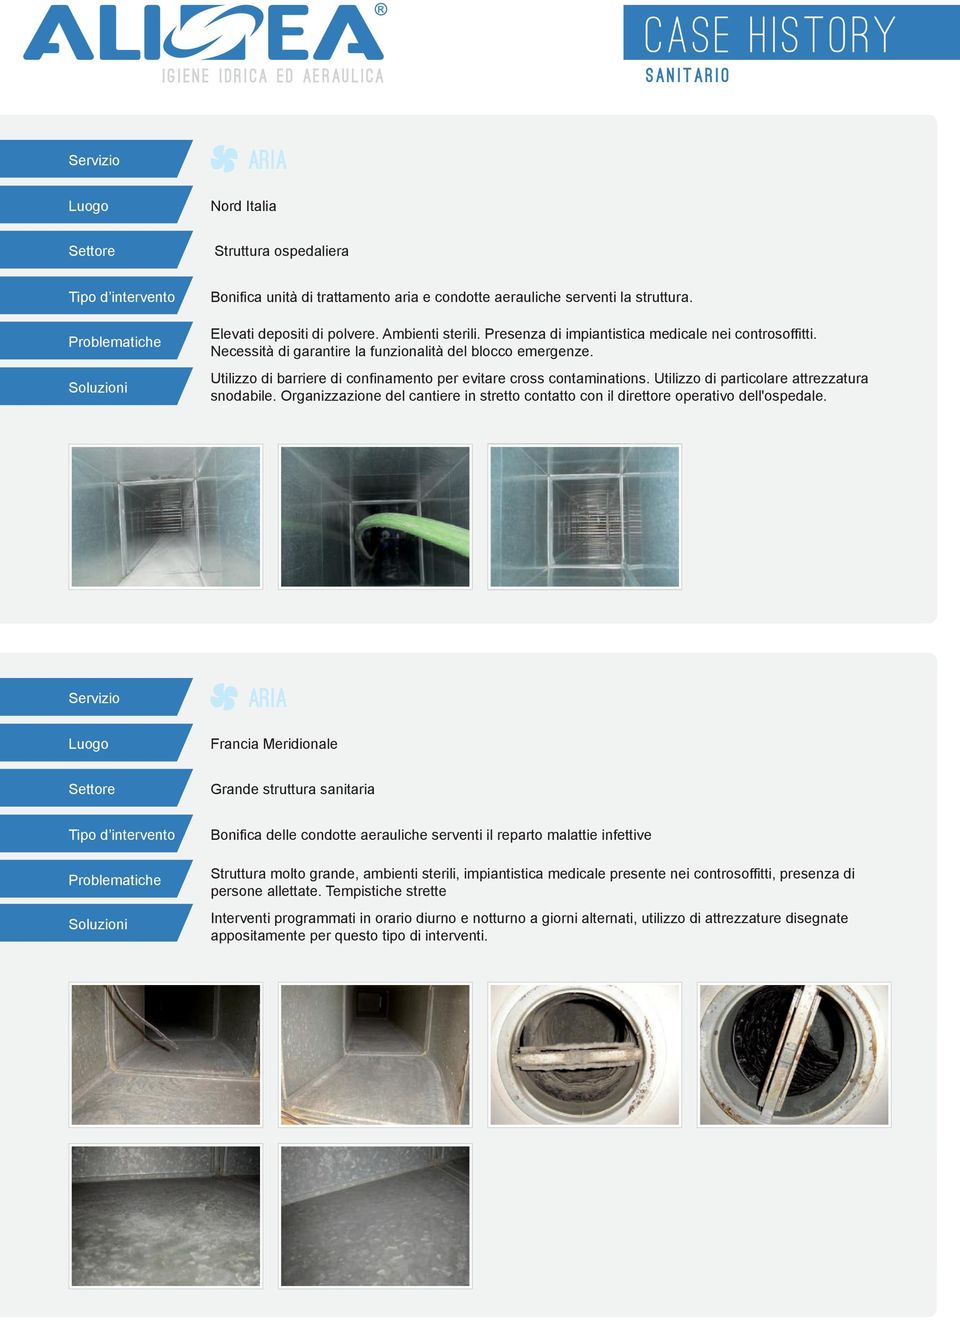 Utilizzo di barriere di confinamento per evitare cross contaminations. Utilizzo di particolare attrezzatura snodabile.